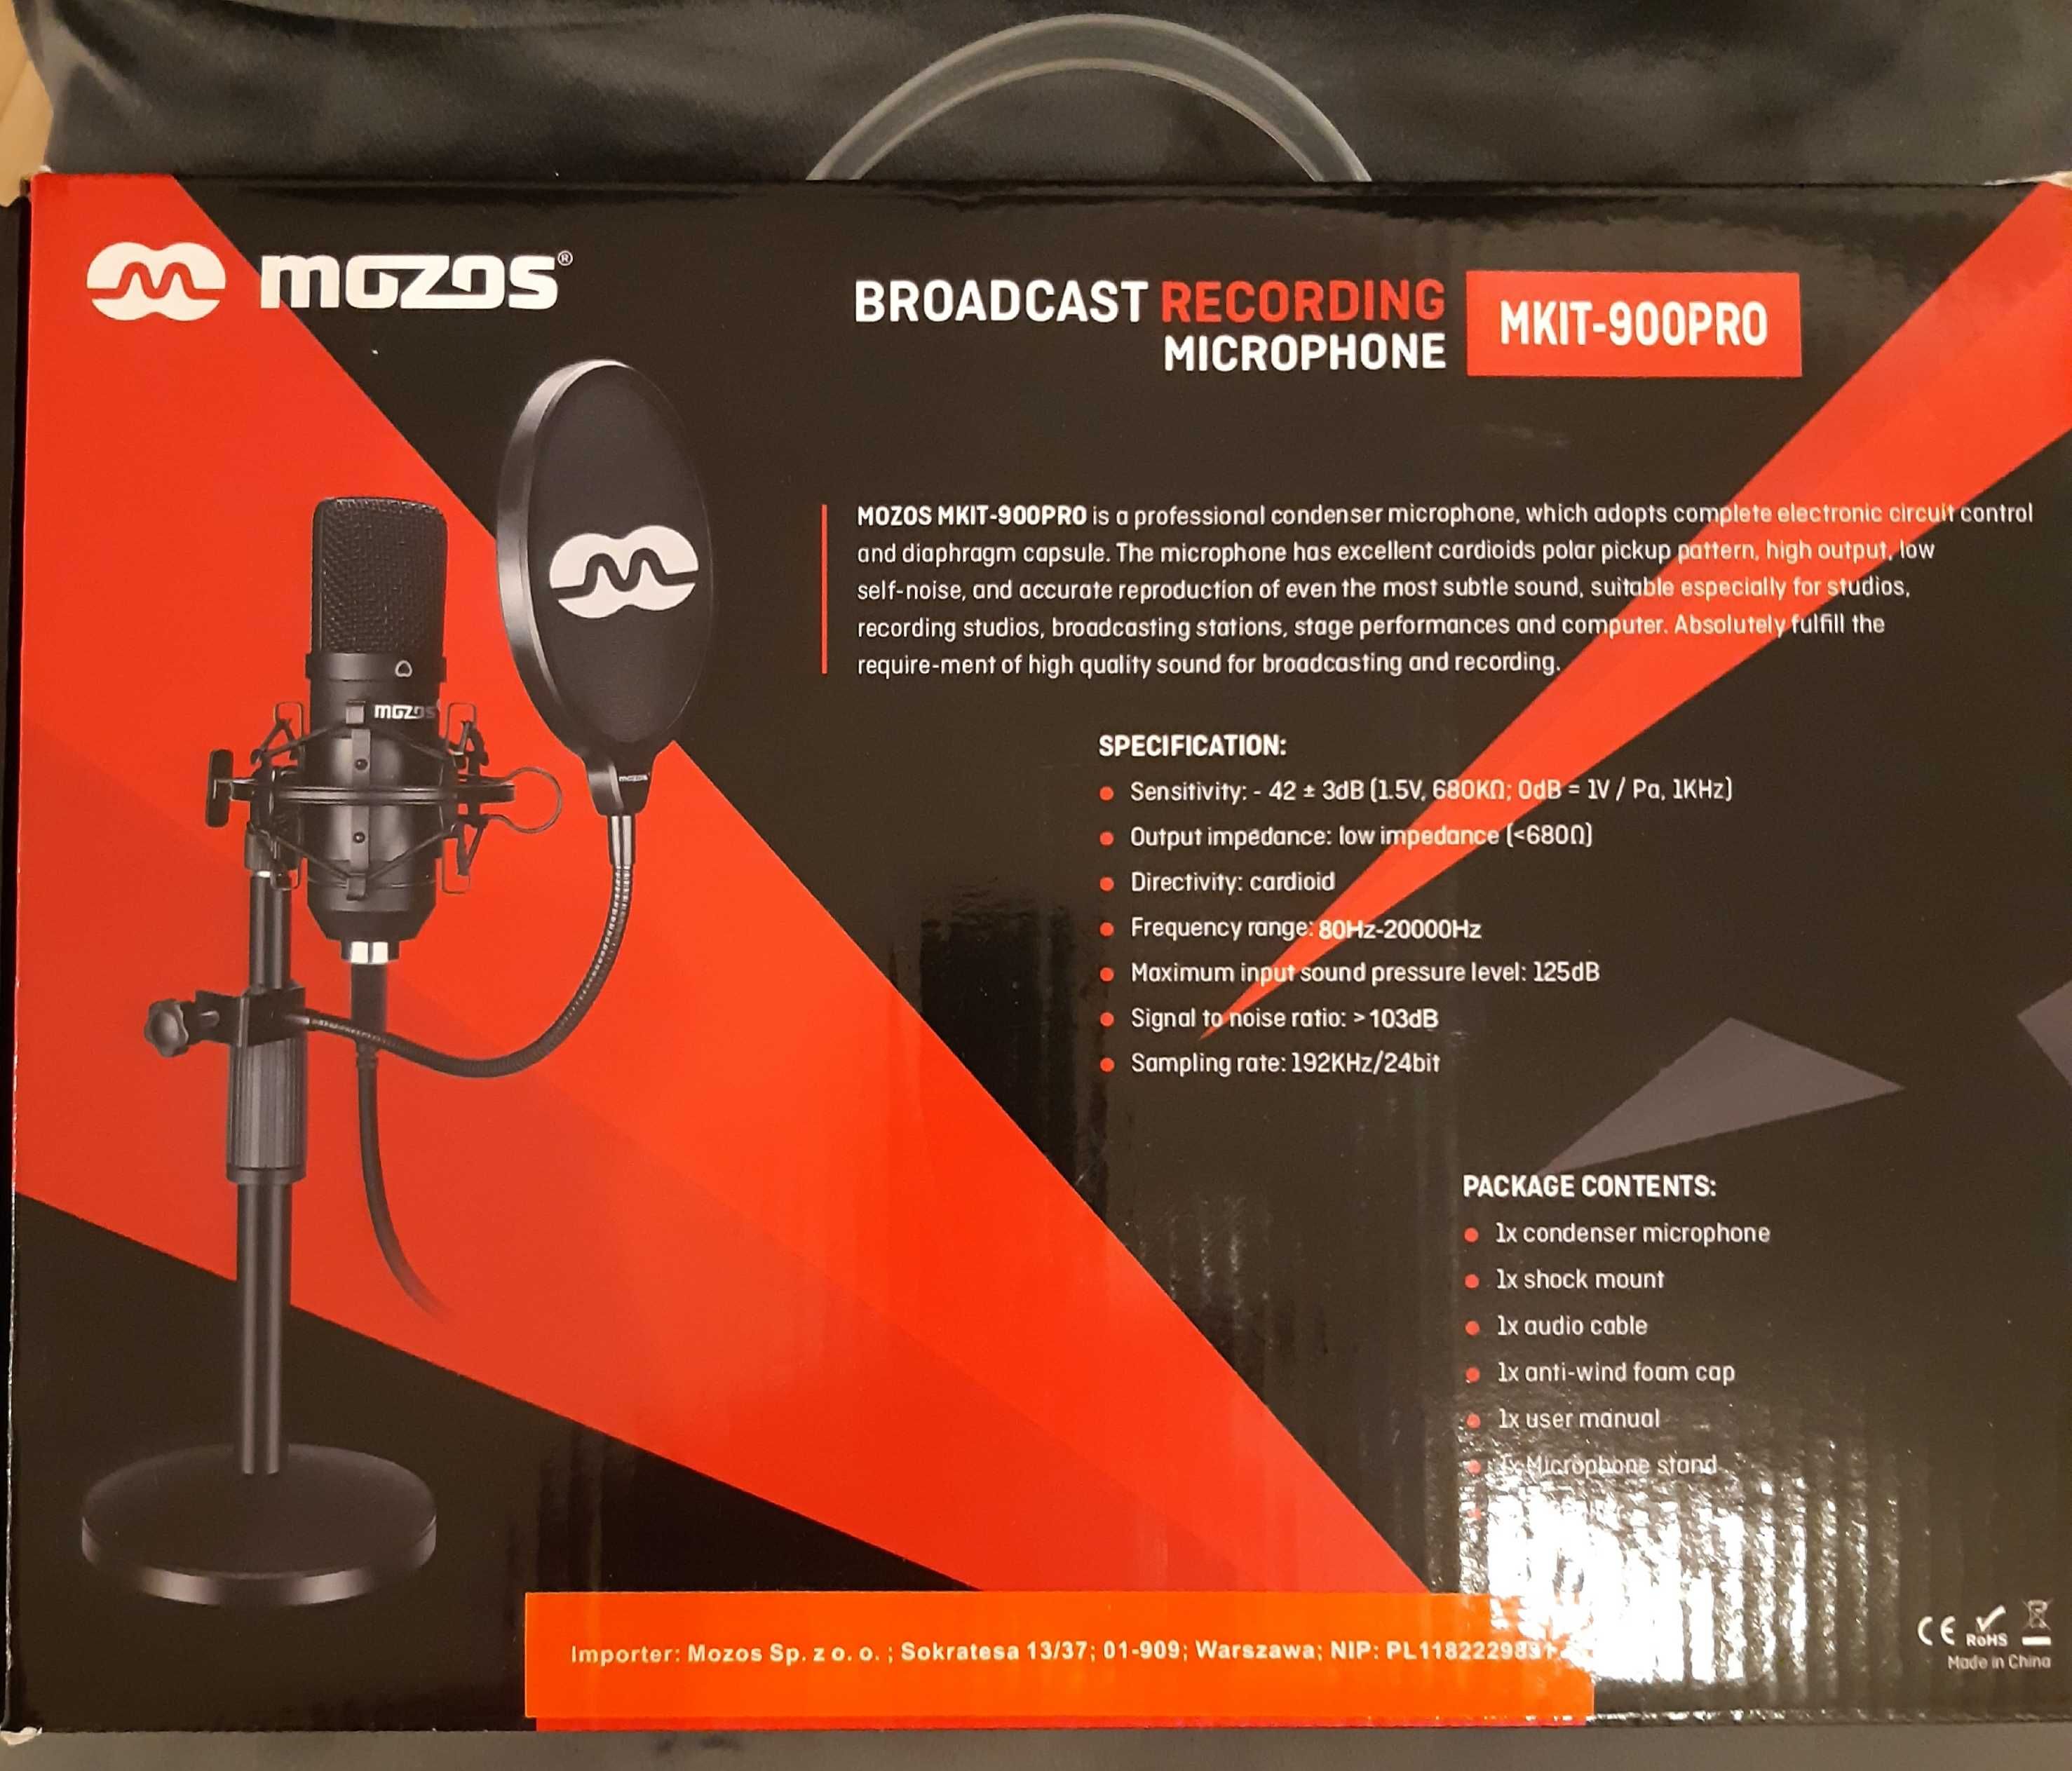 Mikrofon Recording MKIT-900PRO